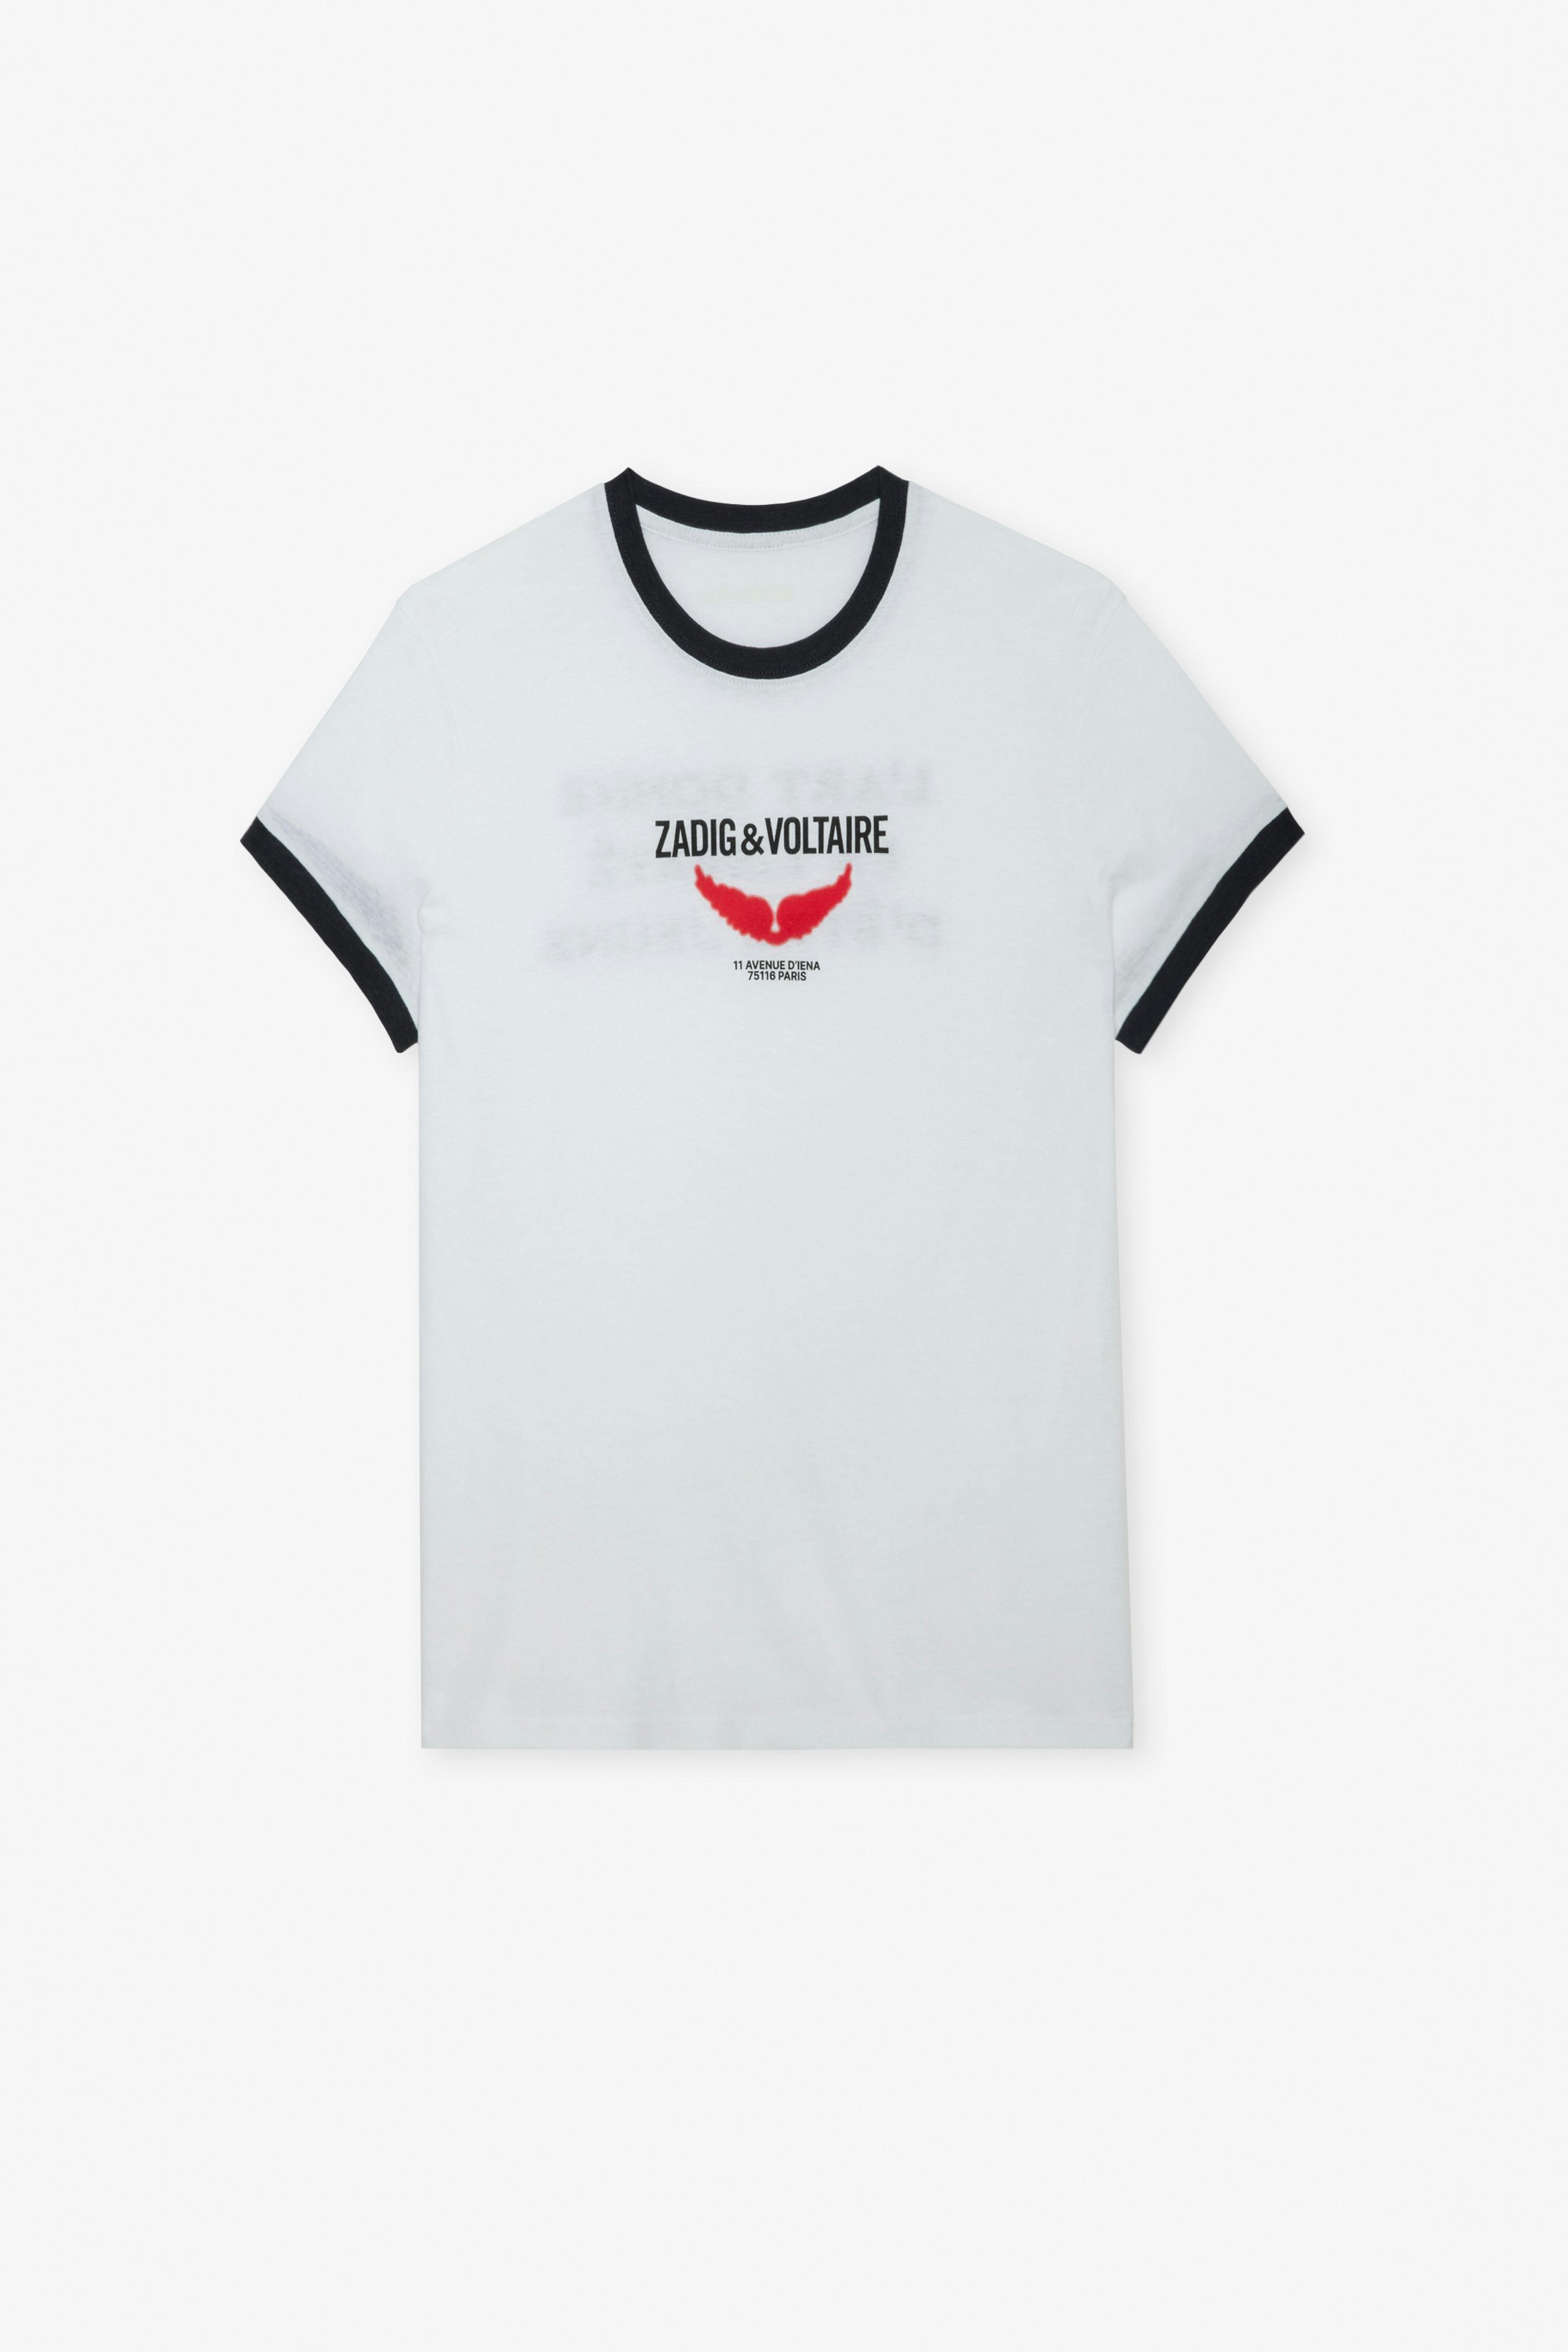 Zoe Wings Liberté T-shirt - Women’s white T-shirt with contrasting trim, wings motif and the slogan “L’art donne la liberté d’être jeune”.